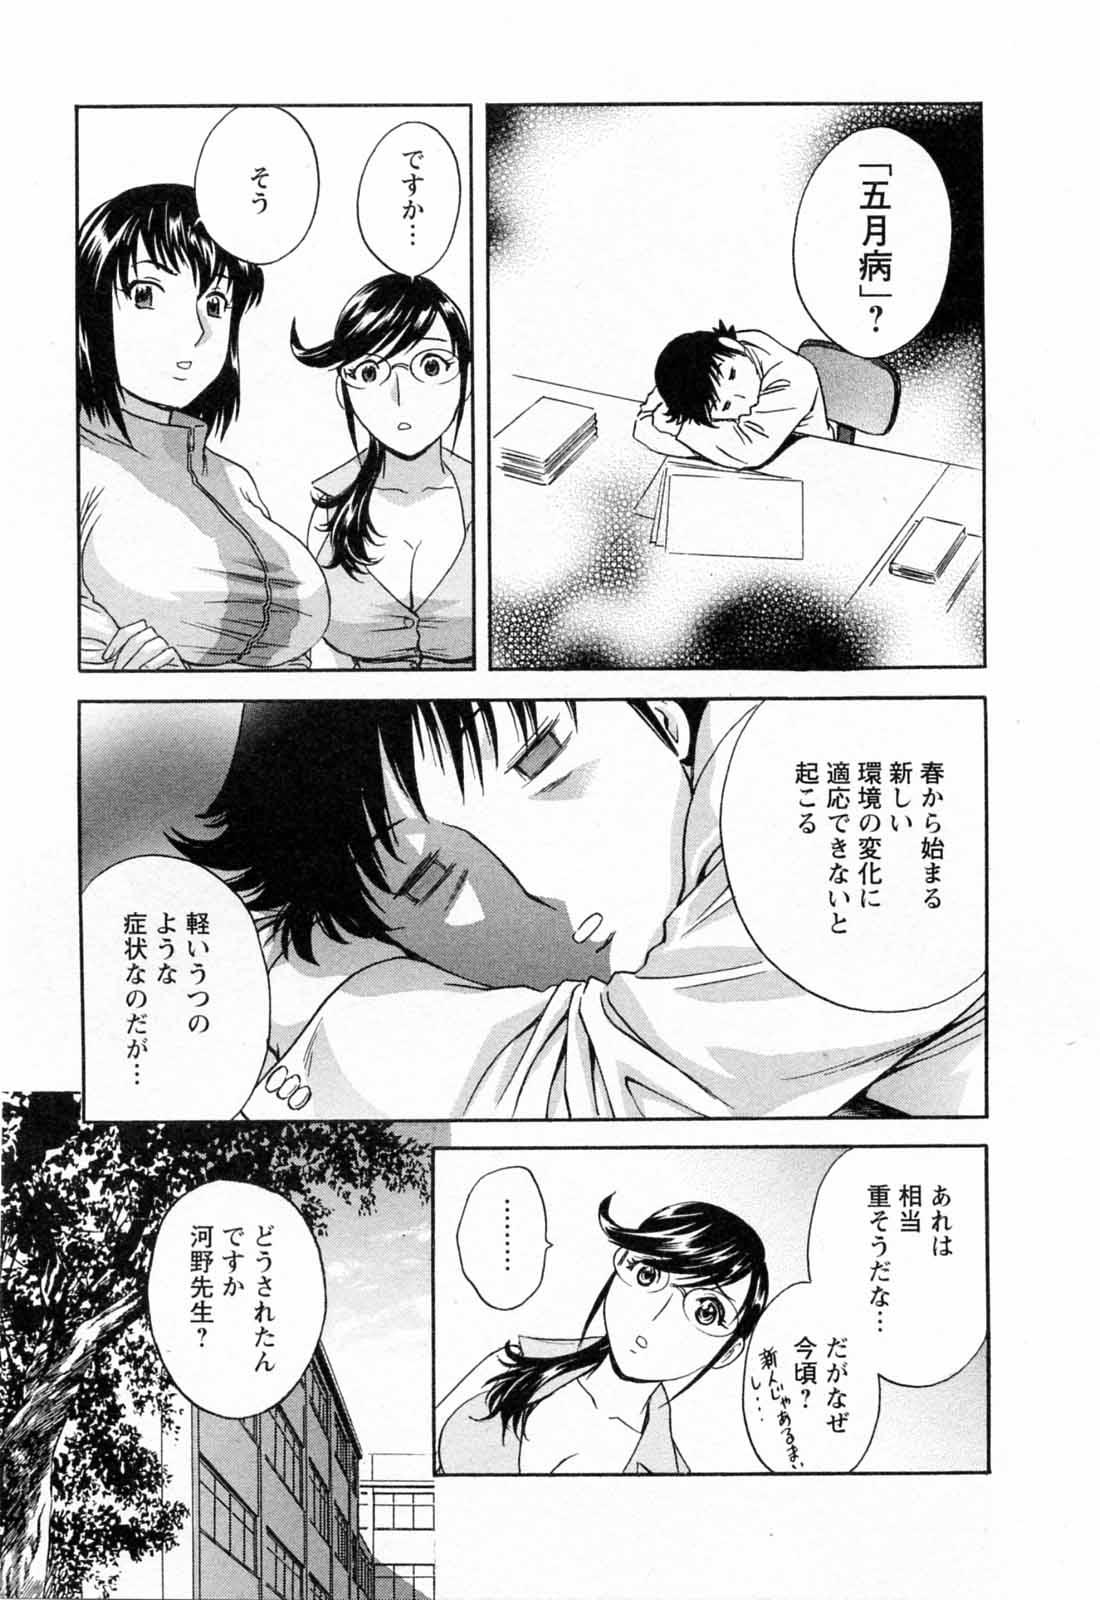 [Hidemaru] Mo-Retsu! Boin Sensei (Boing Boing Teacher) Vol.5 98